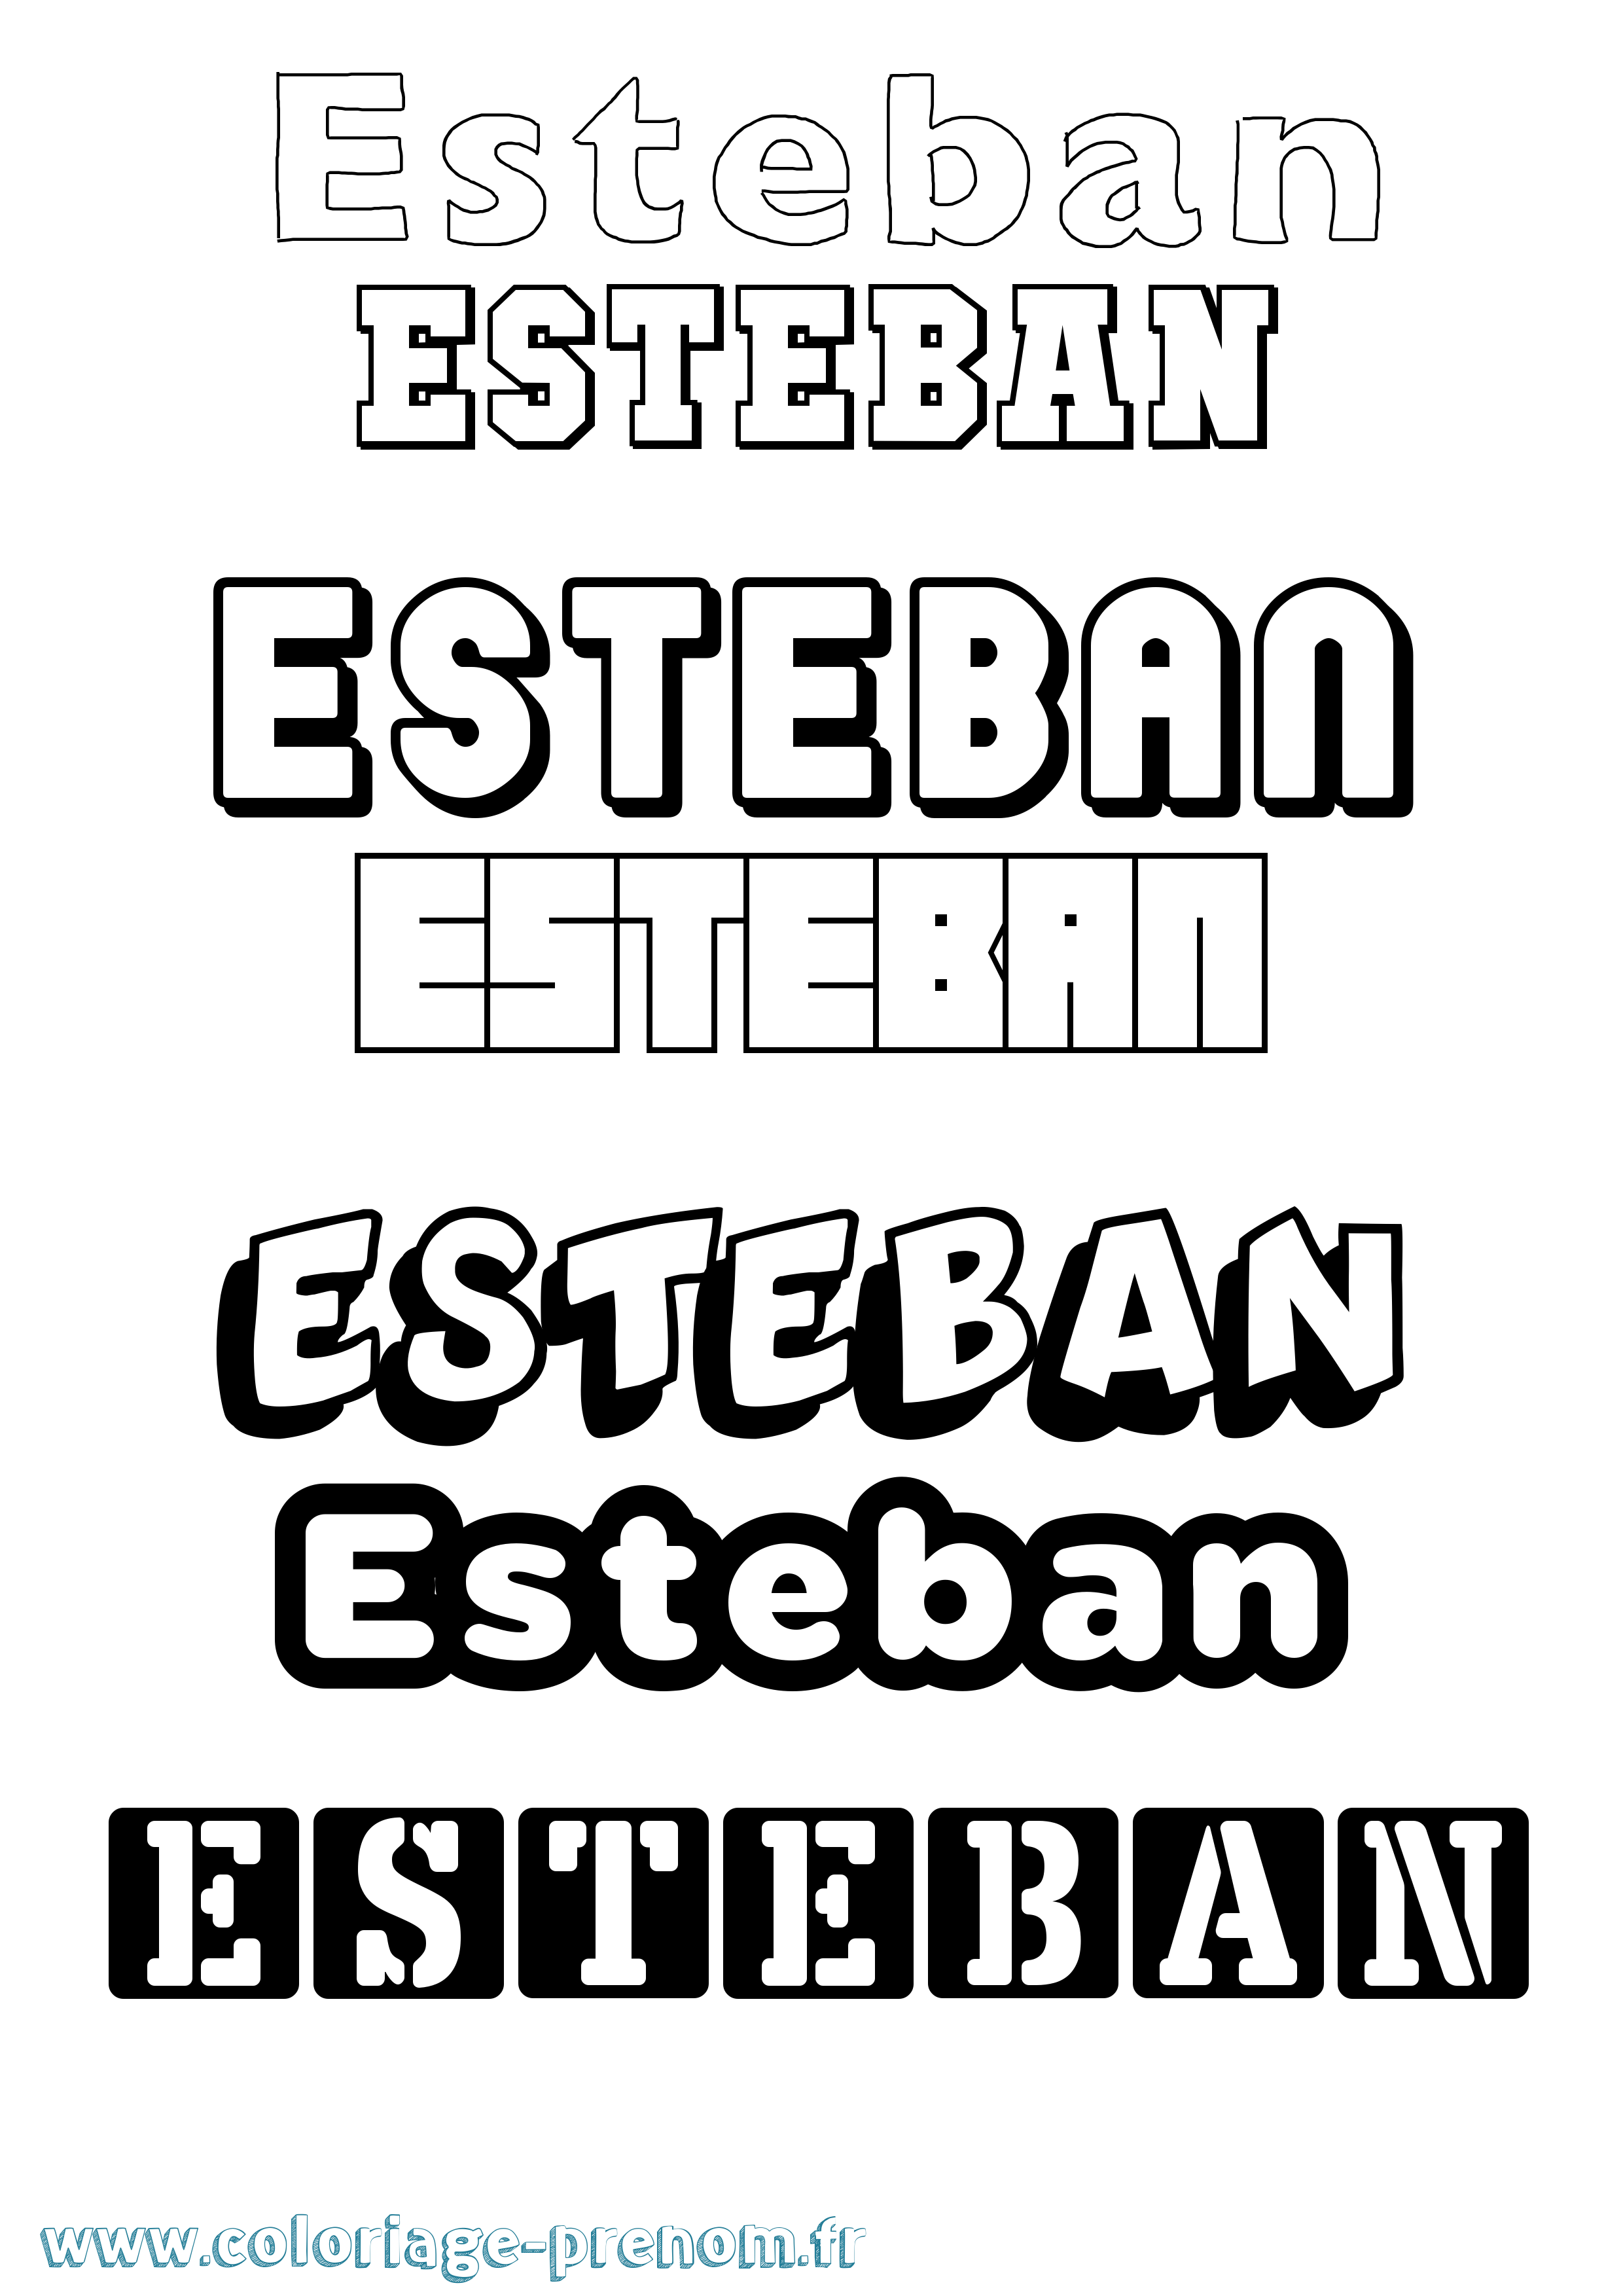 Coloriage prénom Esteban